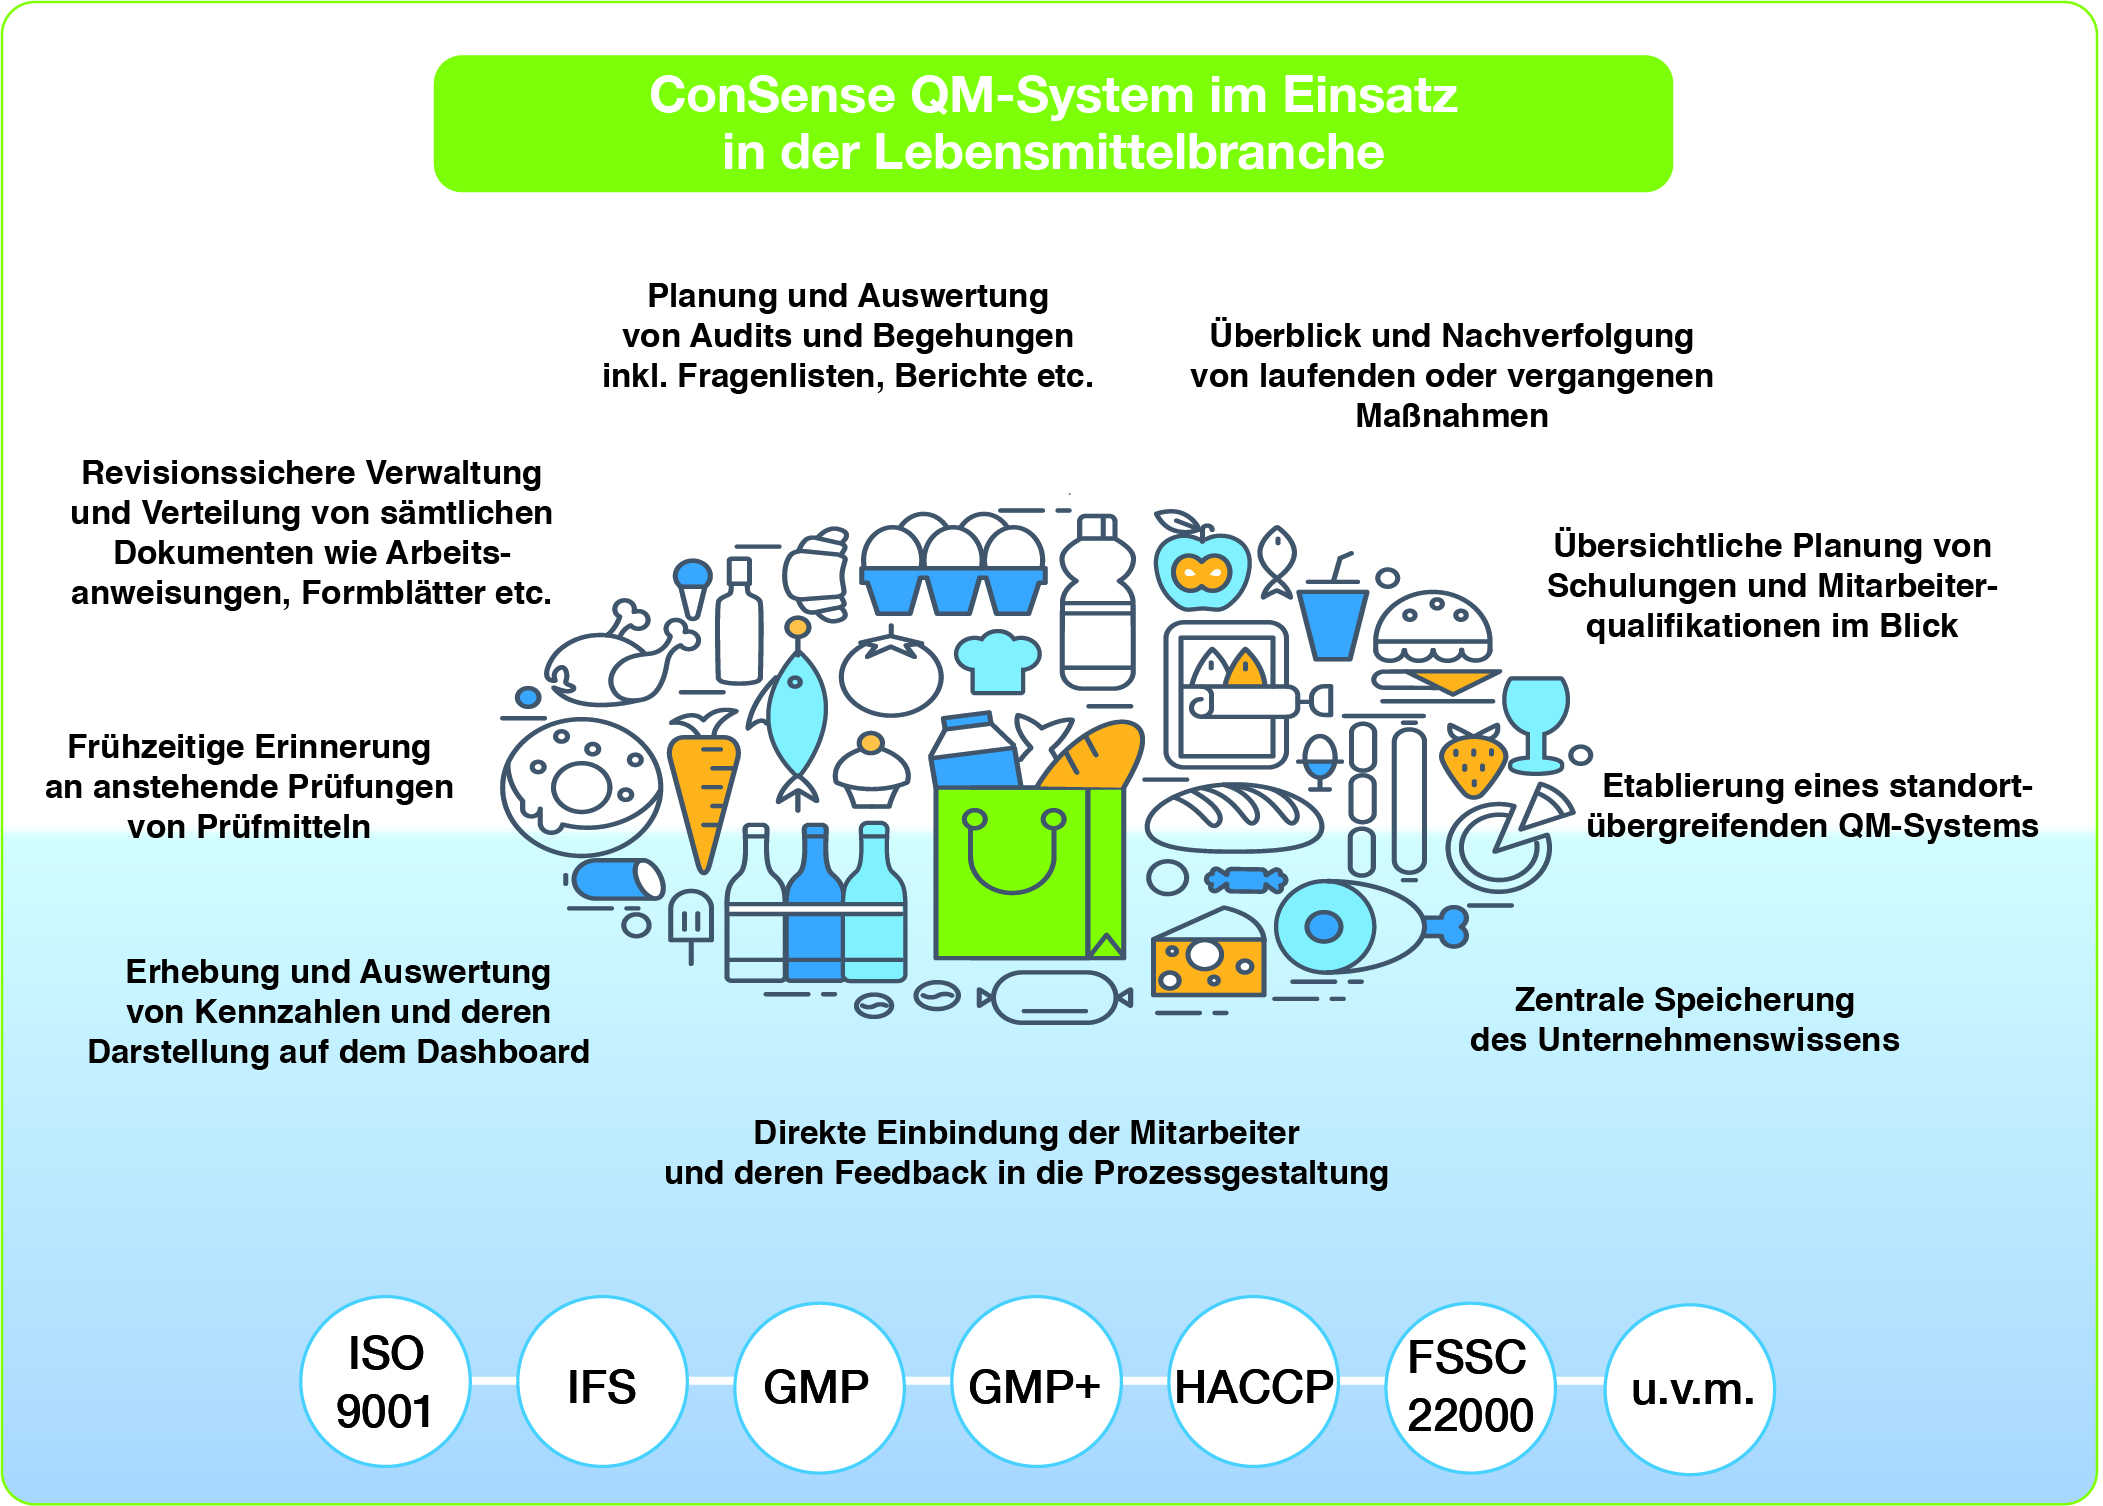 Verbrauchersicherheit durch zuverlässiges Qualitätsmanagement: ConSense Software unterstützt beim Aufbau eines effizienten QM-Systems in der Lebensmittelbranche